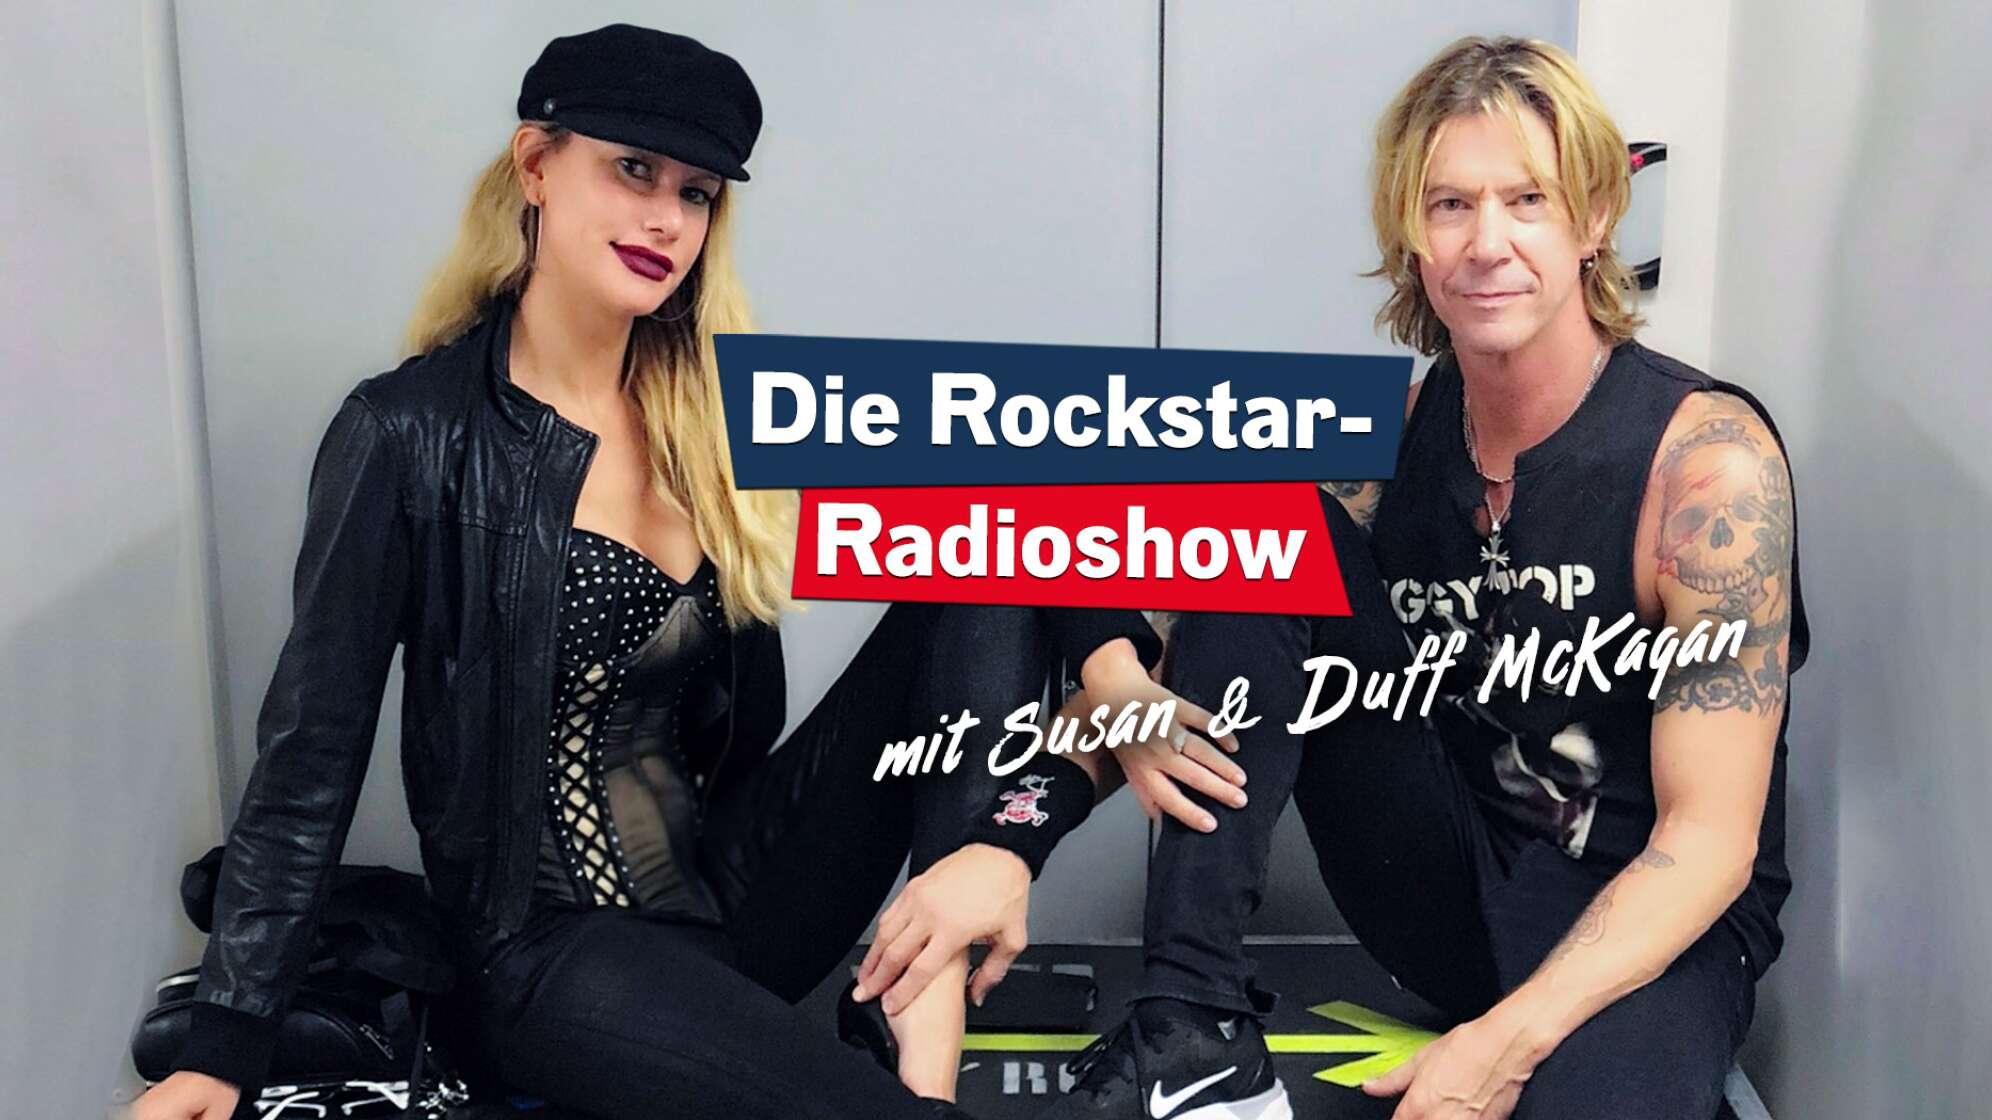 Ein Bild von Susan Holmes McKagan und Duff McKagan, wie sie im Backstagebereich auf einer Instrumentenkiste sitzen; Text: "Die Rockstar-Radioshow"